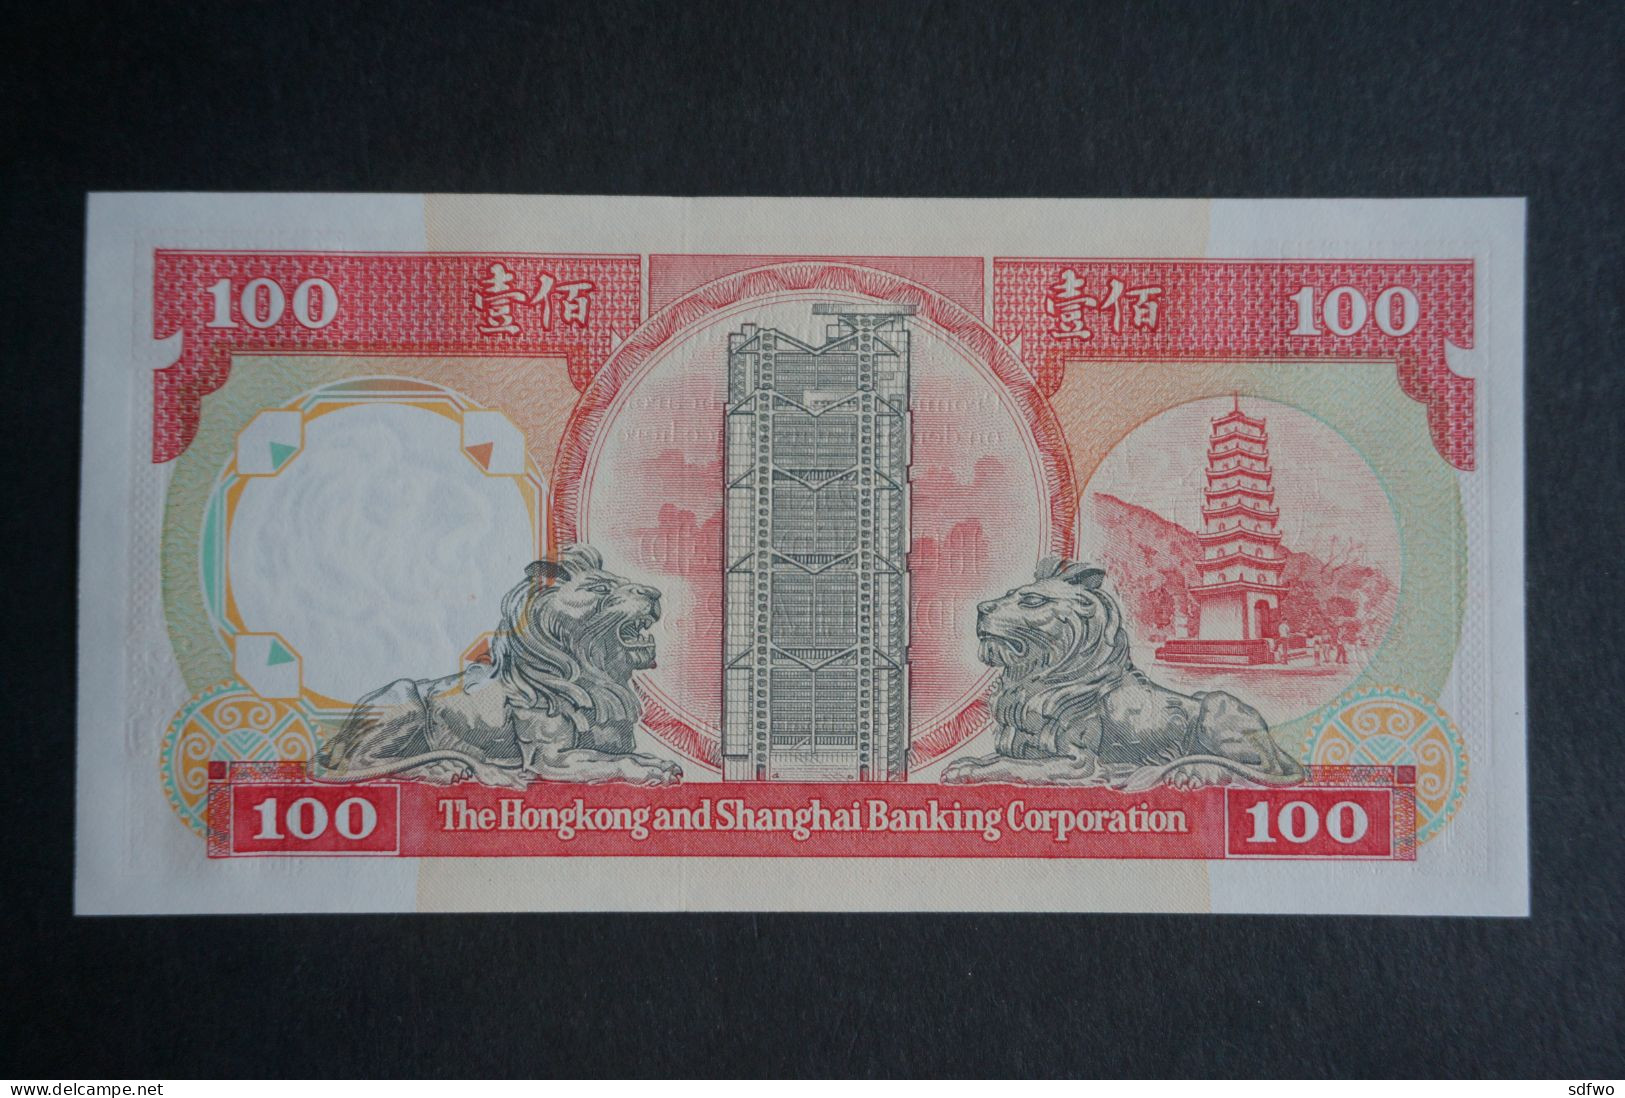 (Tv) 1991 HONG KONG OLD ISSUE - HSBC 100 DOLLARS ($100) Serial No. NN039097 (UNC) - Hongkong